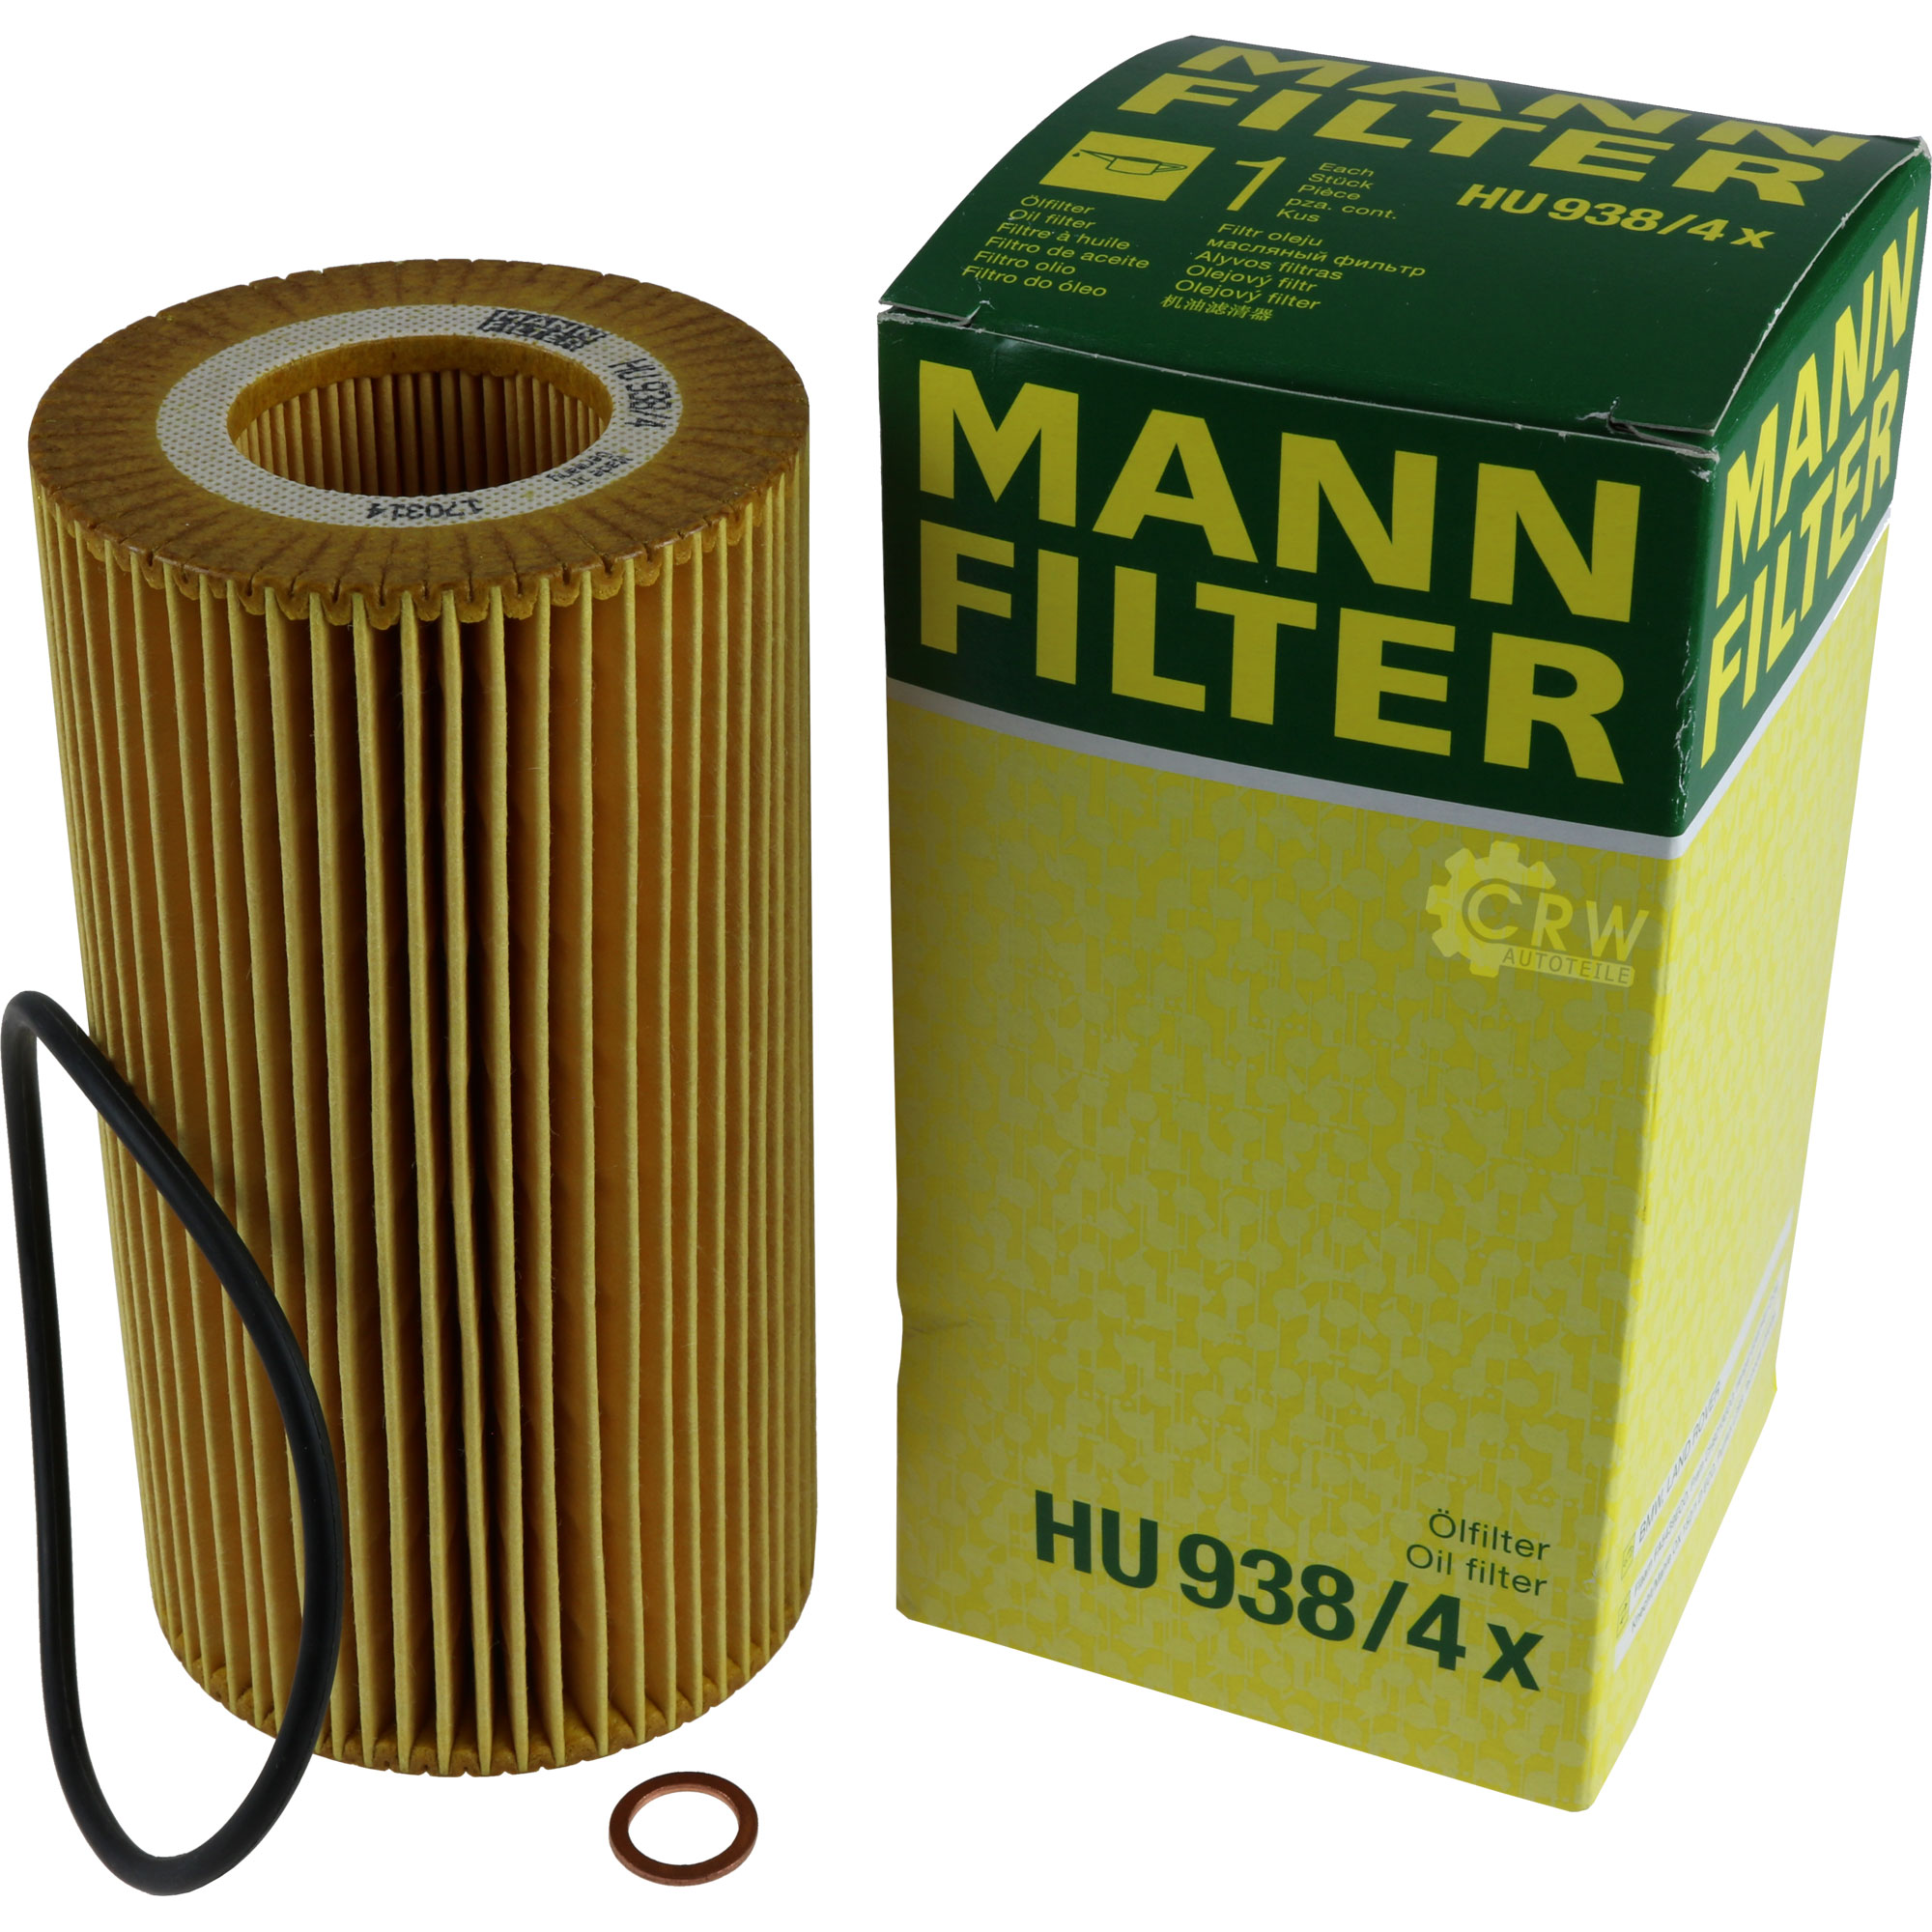 MANN-FILTER Ölfilter HU 938/4 x Oil Filter